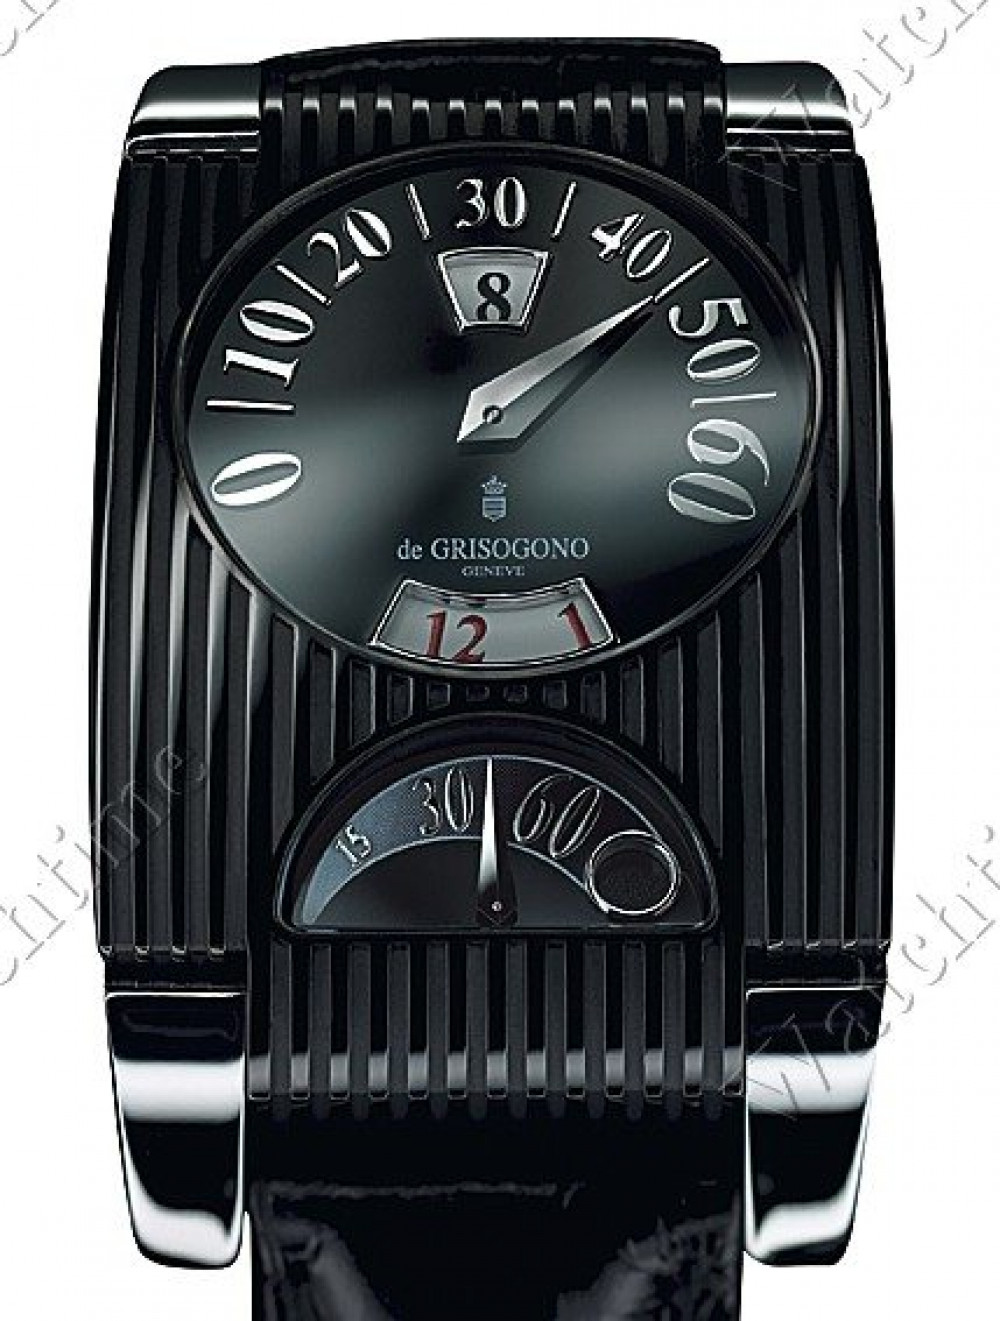 Zegarek firmy De Grisogono, model FG One N02